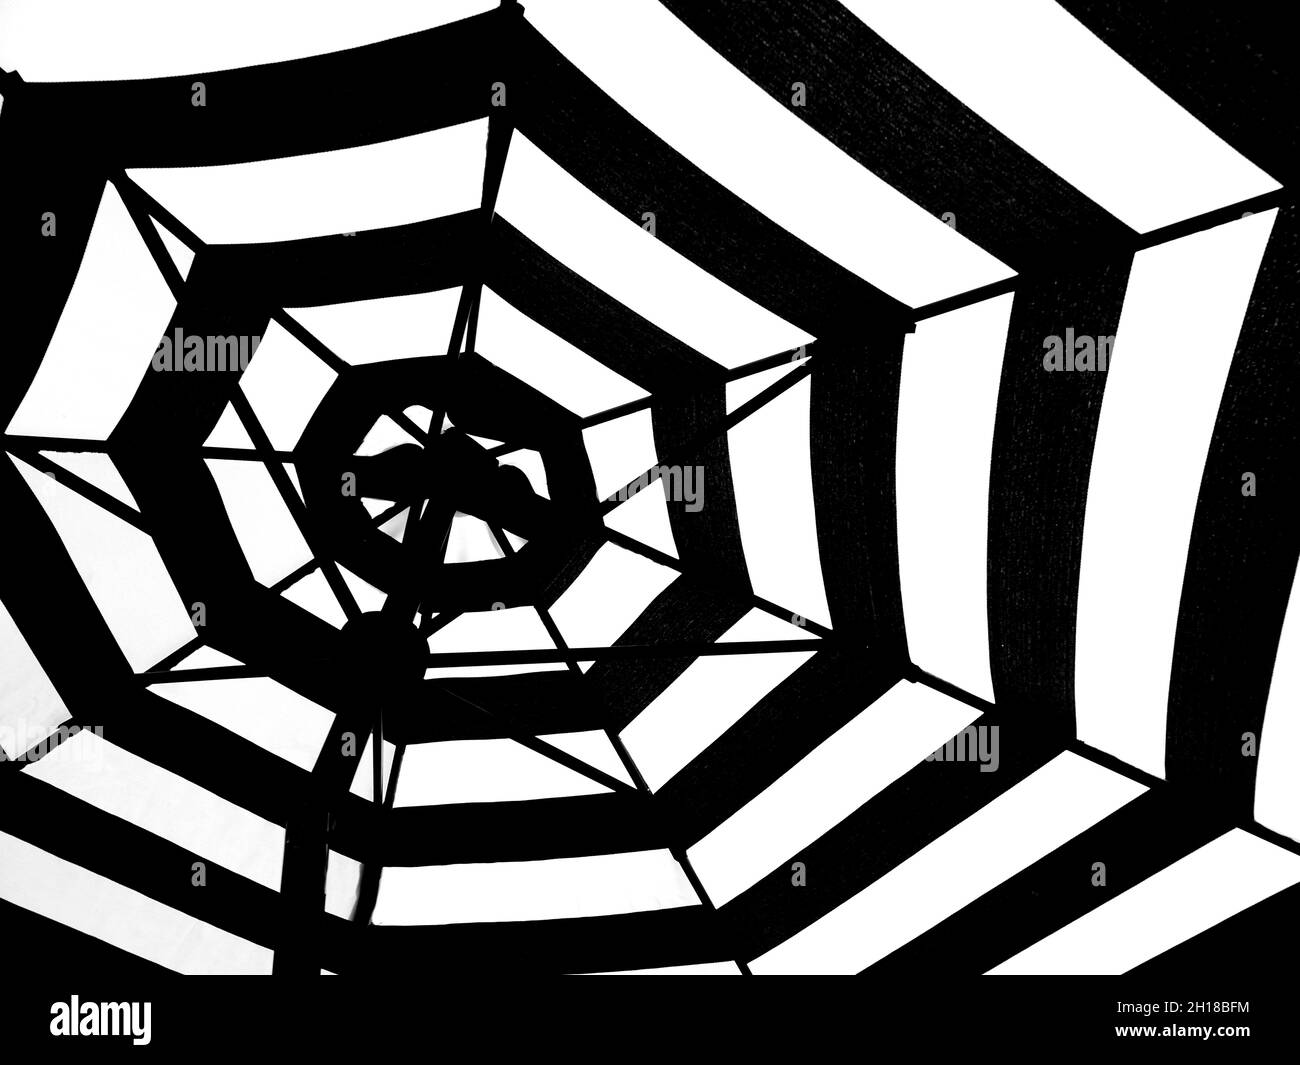 Motif répétitif noir et blanc dans un parasol Banque D'Images